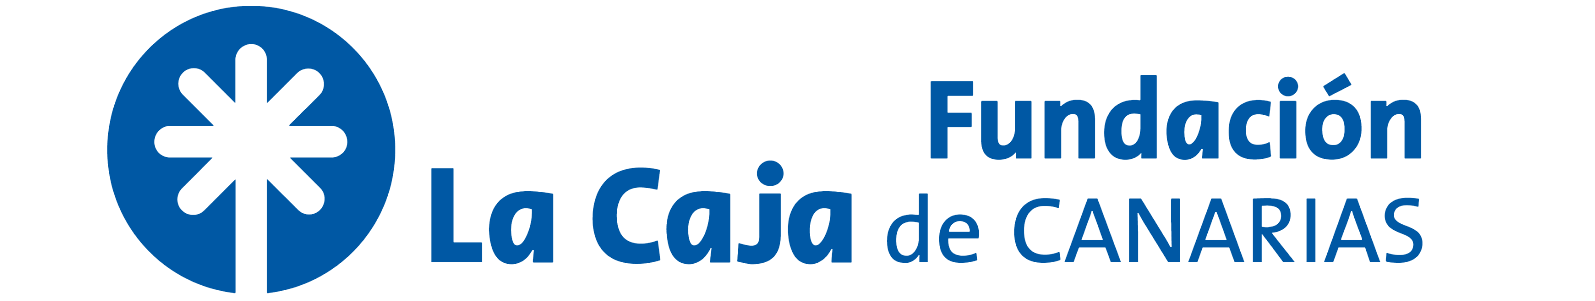 Fundación La Caja de Canarias member of the CECA group